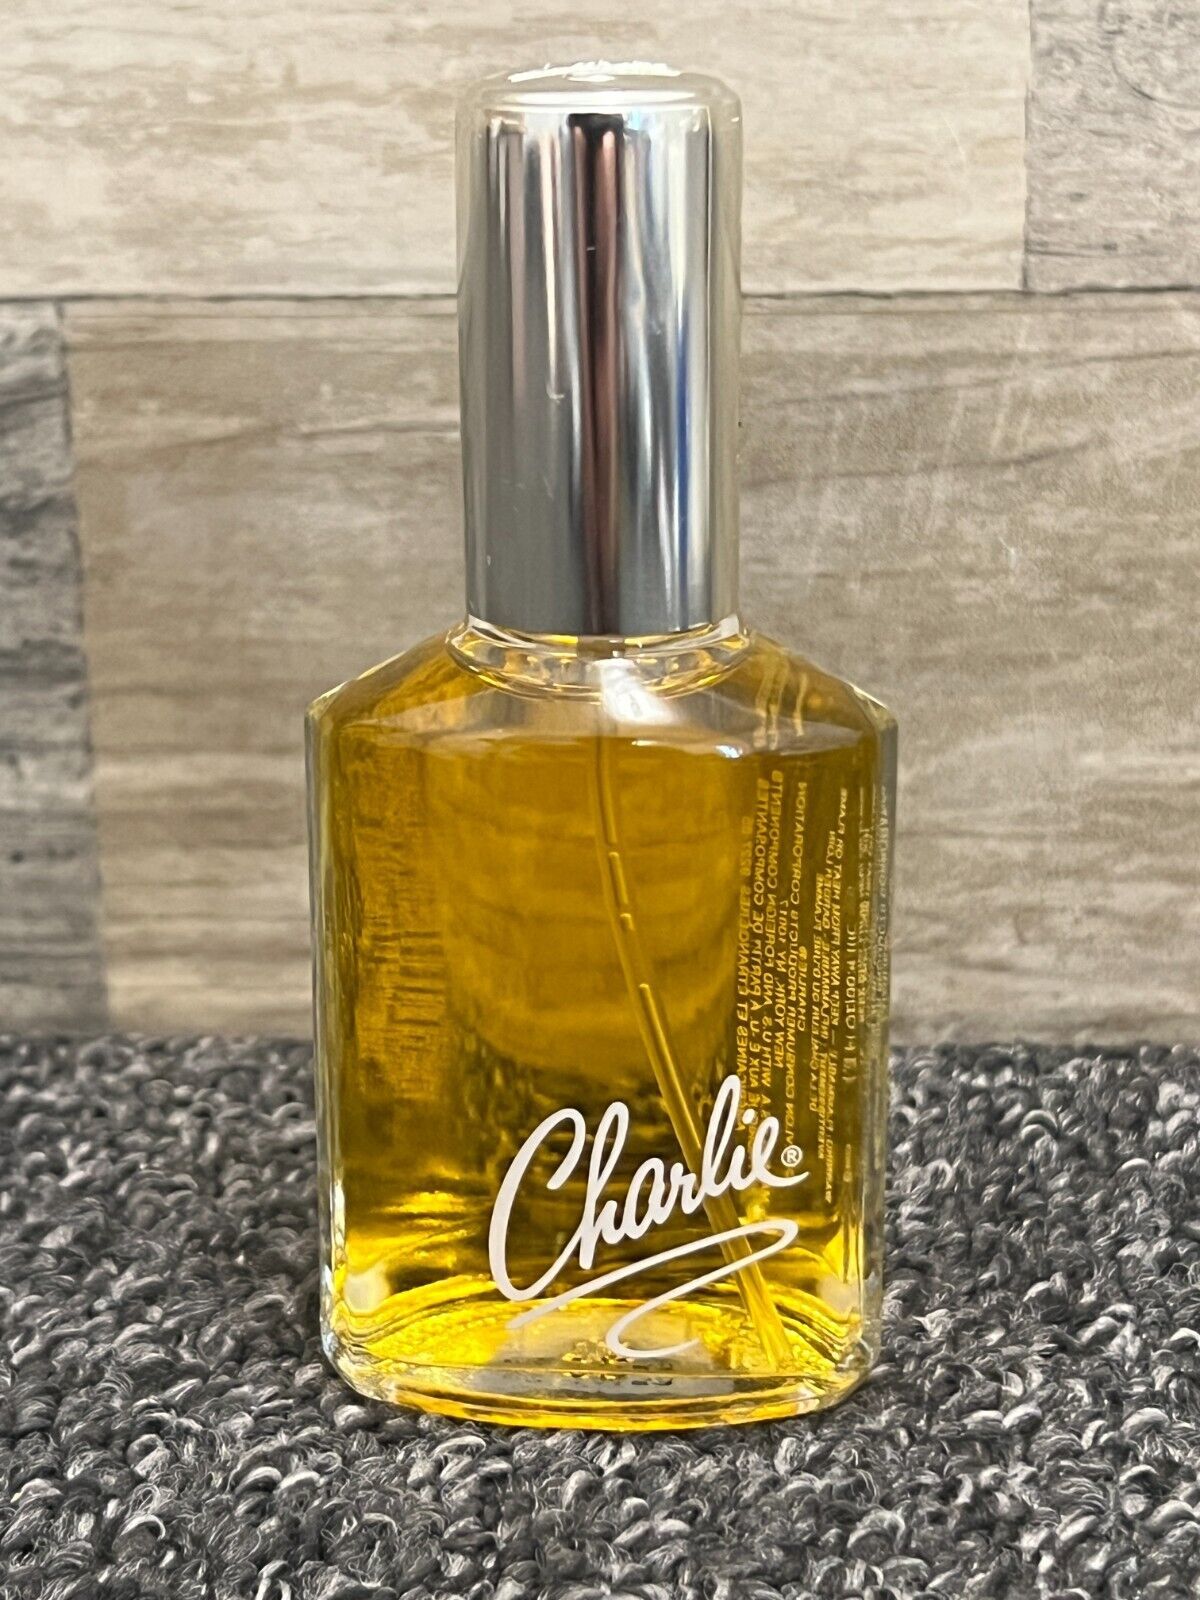 Revlon Charlie Eau De Toilette 1.3 fl oz Cologne Spray EDT Original Perfume 90’s - $24.18